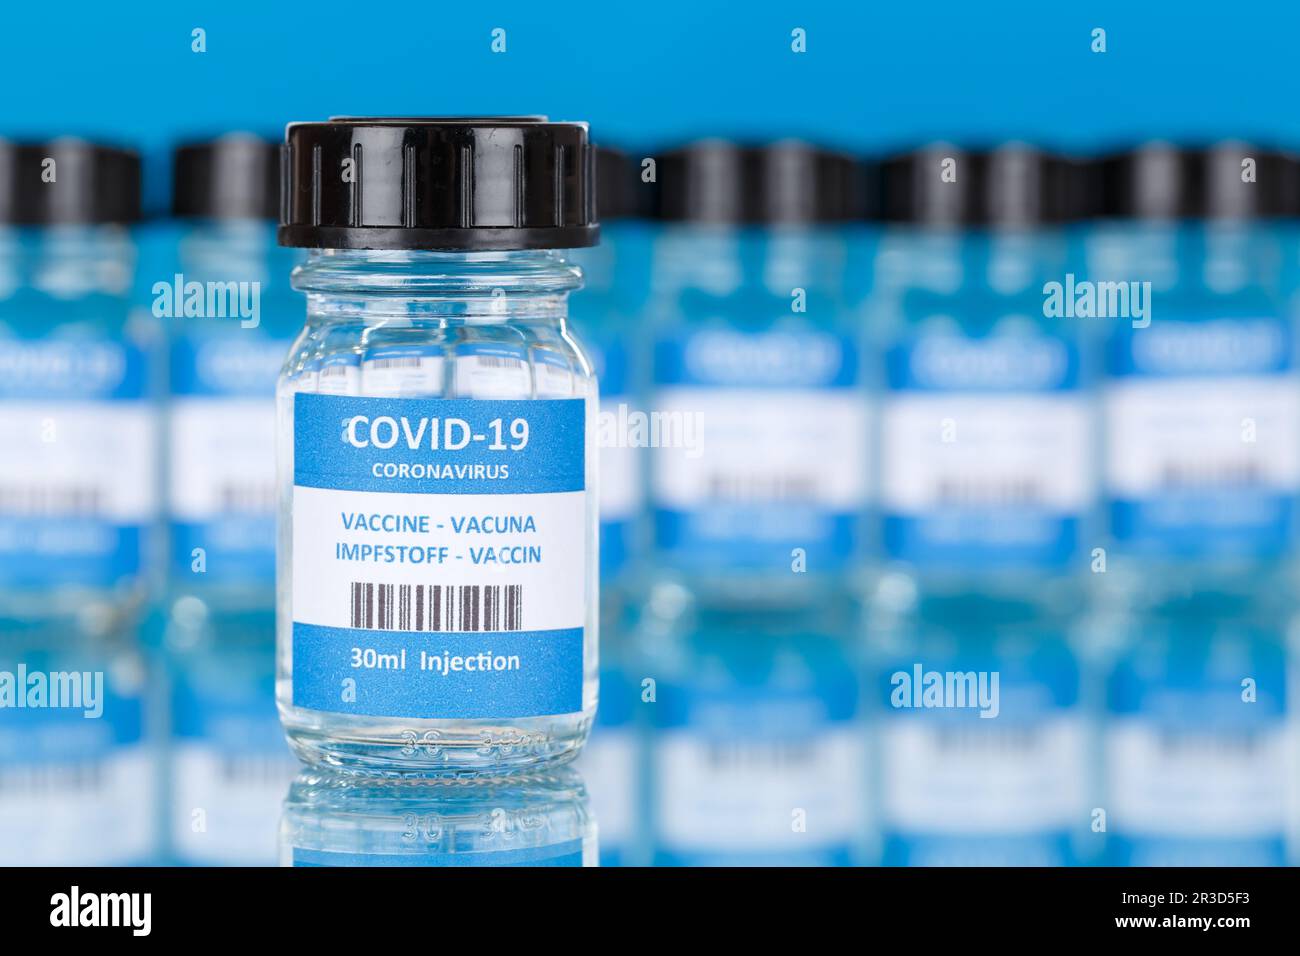 Stuttgart, Deutschland - 5. Januar 2021: Impfstoff Coronavirus Corona Virus COVID-19 Covid Impfung Vaccine in Deutschland. Stock Photo